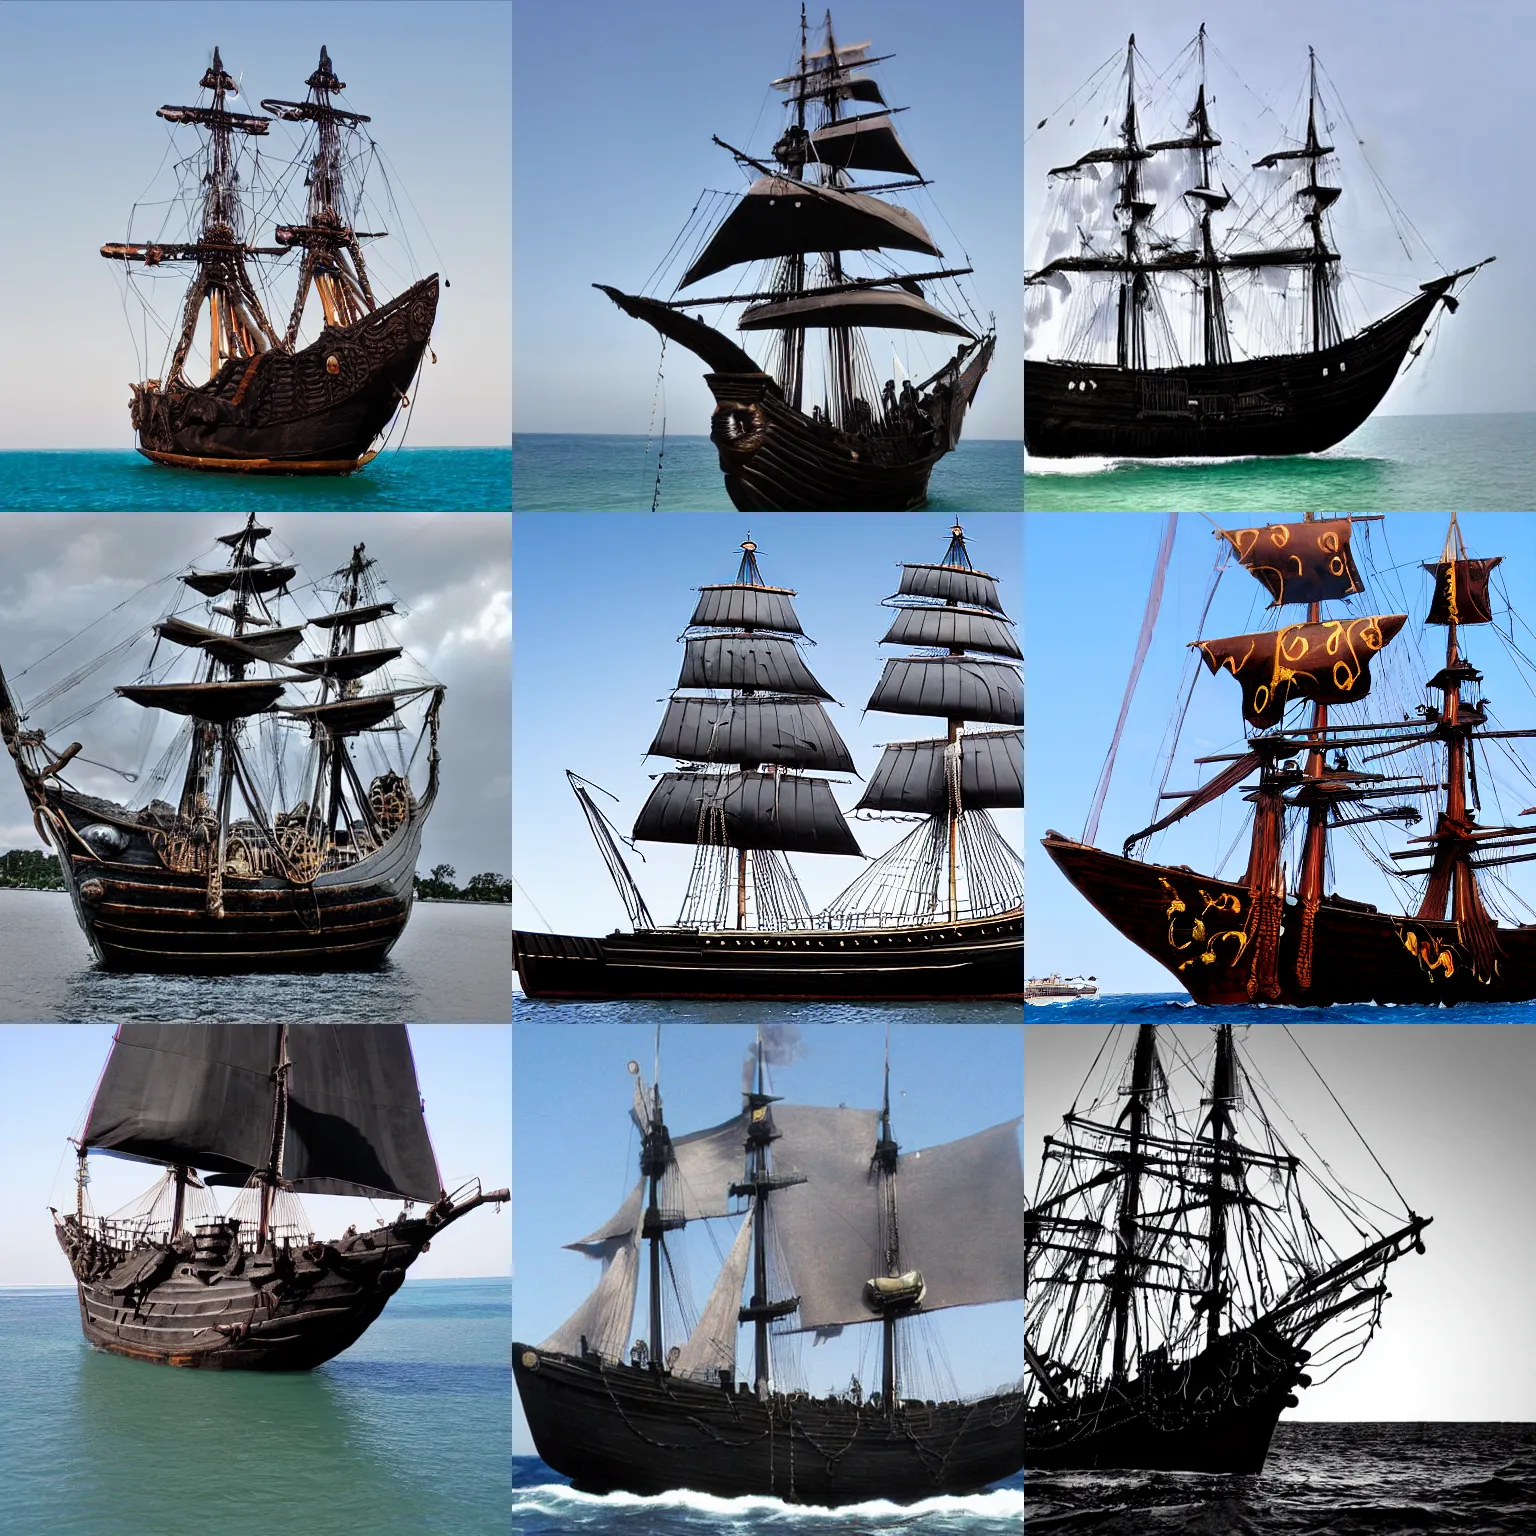 black pearl pirate ship drawings